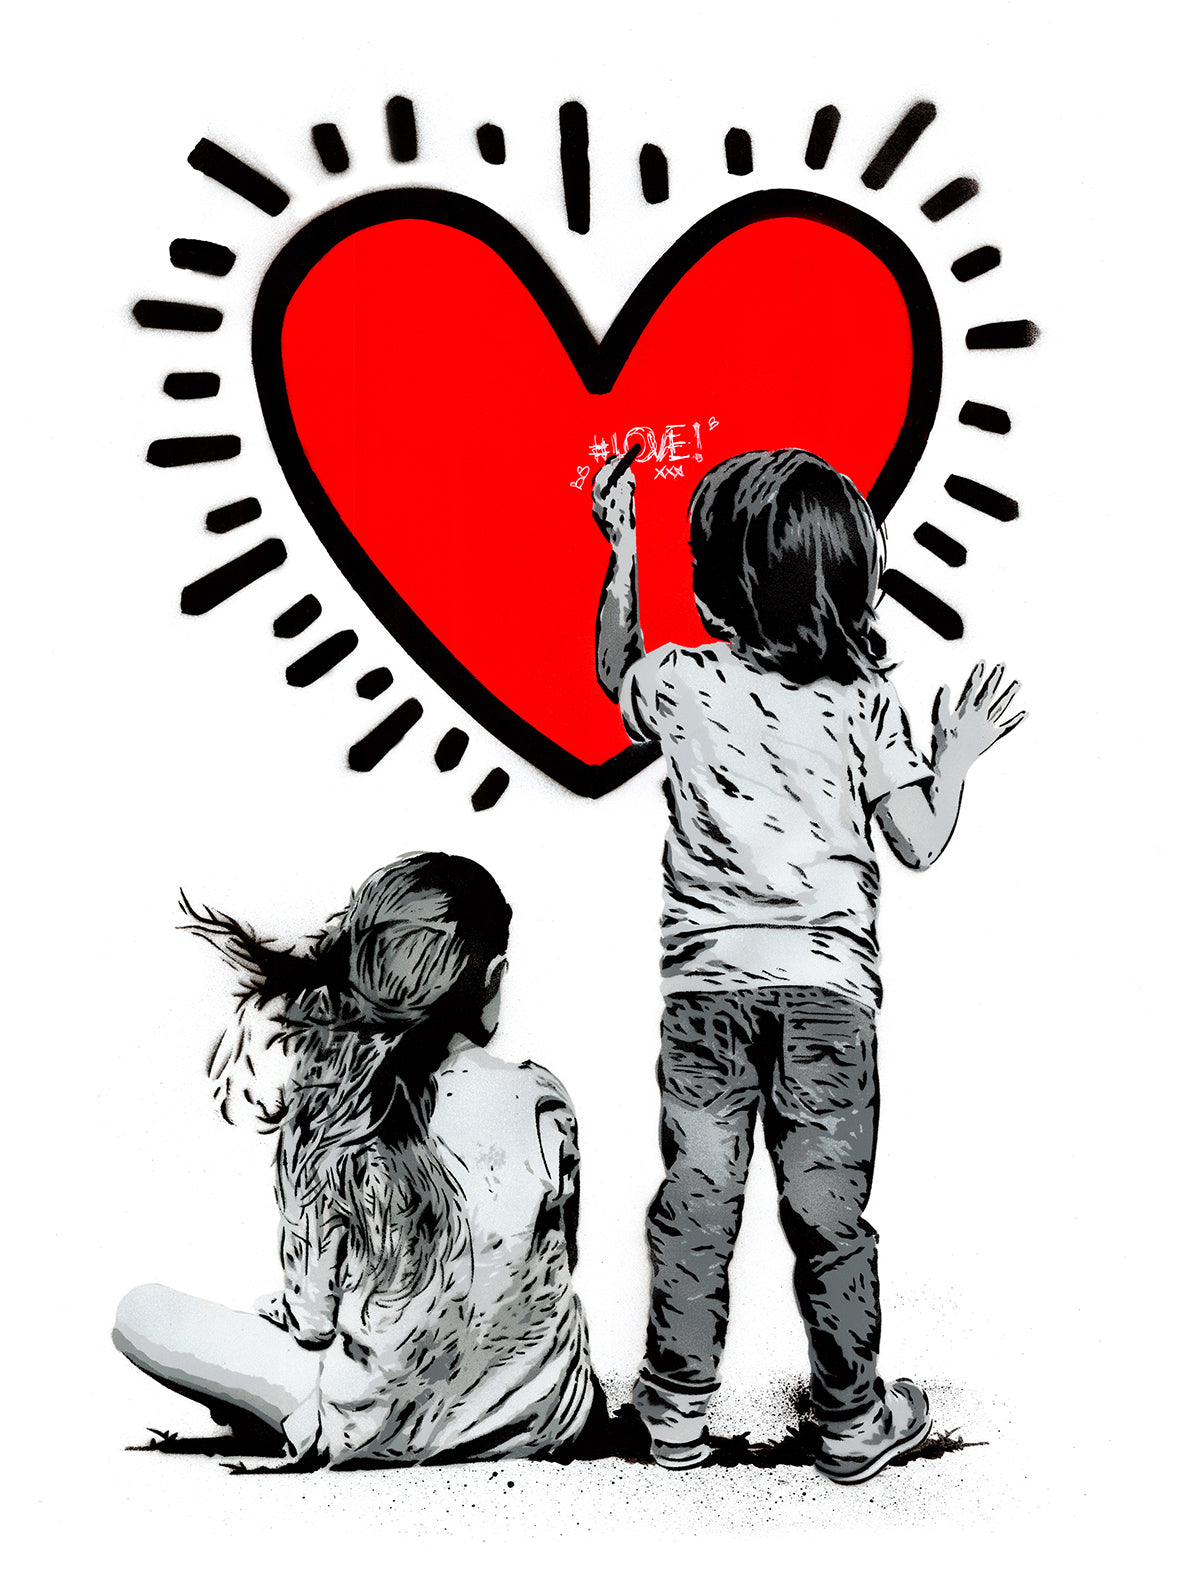 Heart di Alessio-B. Stampa giclée stampa giclée su carta 320 gsm edizione limitata rappresentante due bambini che disegnano su un grande cuore rosso | CD Studio d'Arte